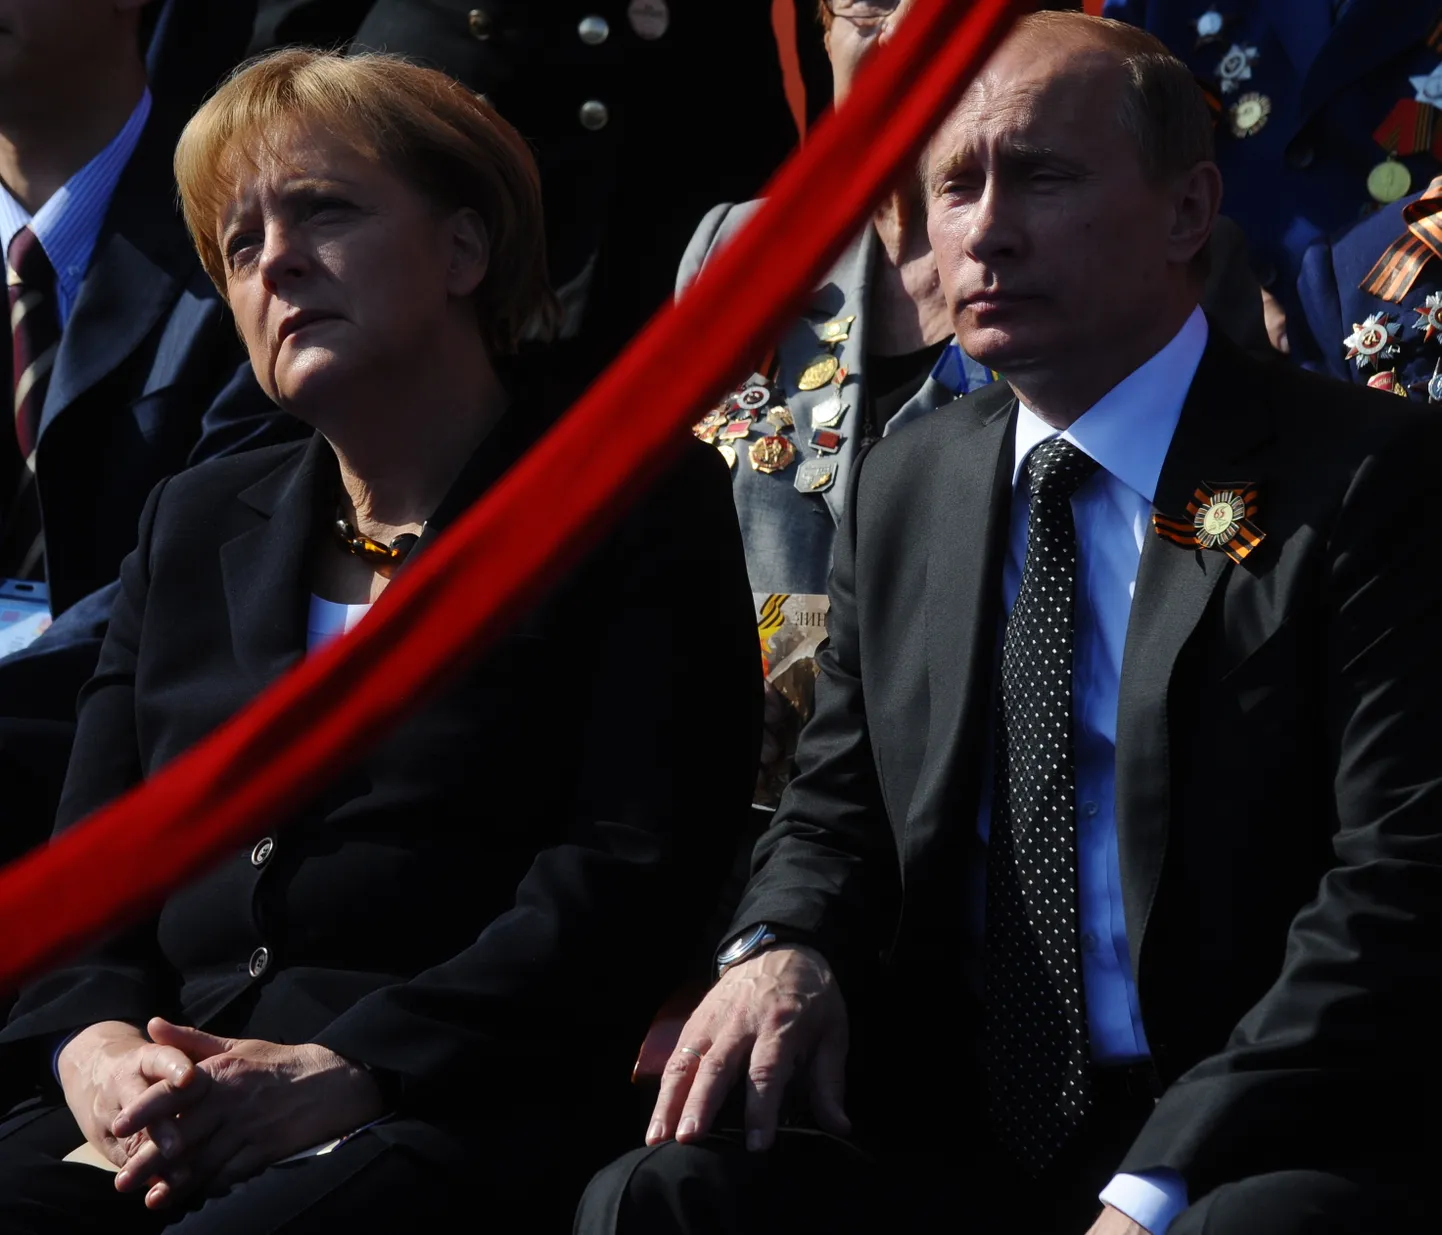 Saksa kantsler Angela Merkel saadab Vene presidendile Vladimir Putinile aegajalt Radebergeri õlut. Venemaa riigipea omakorda vastukingiks suitsukala.